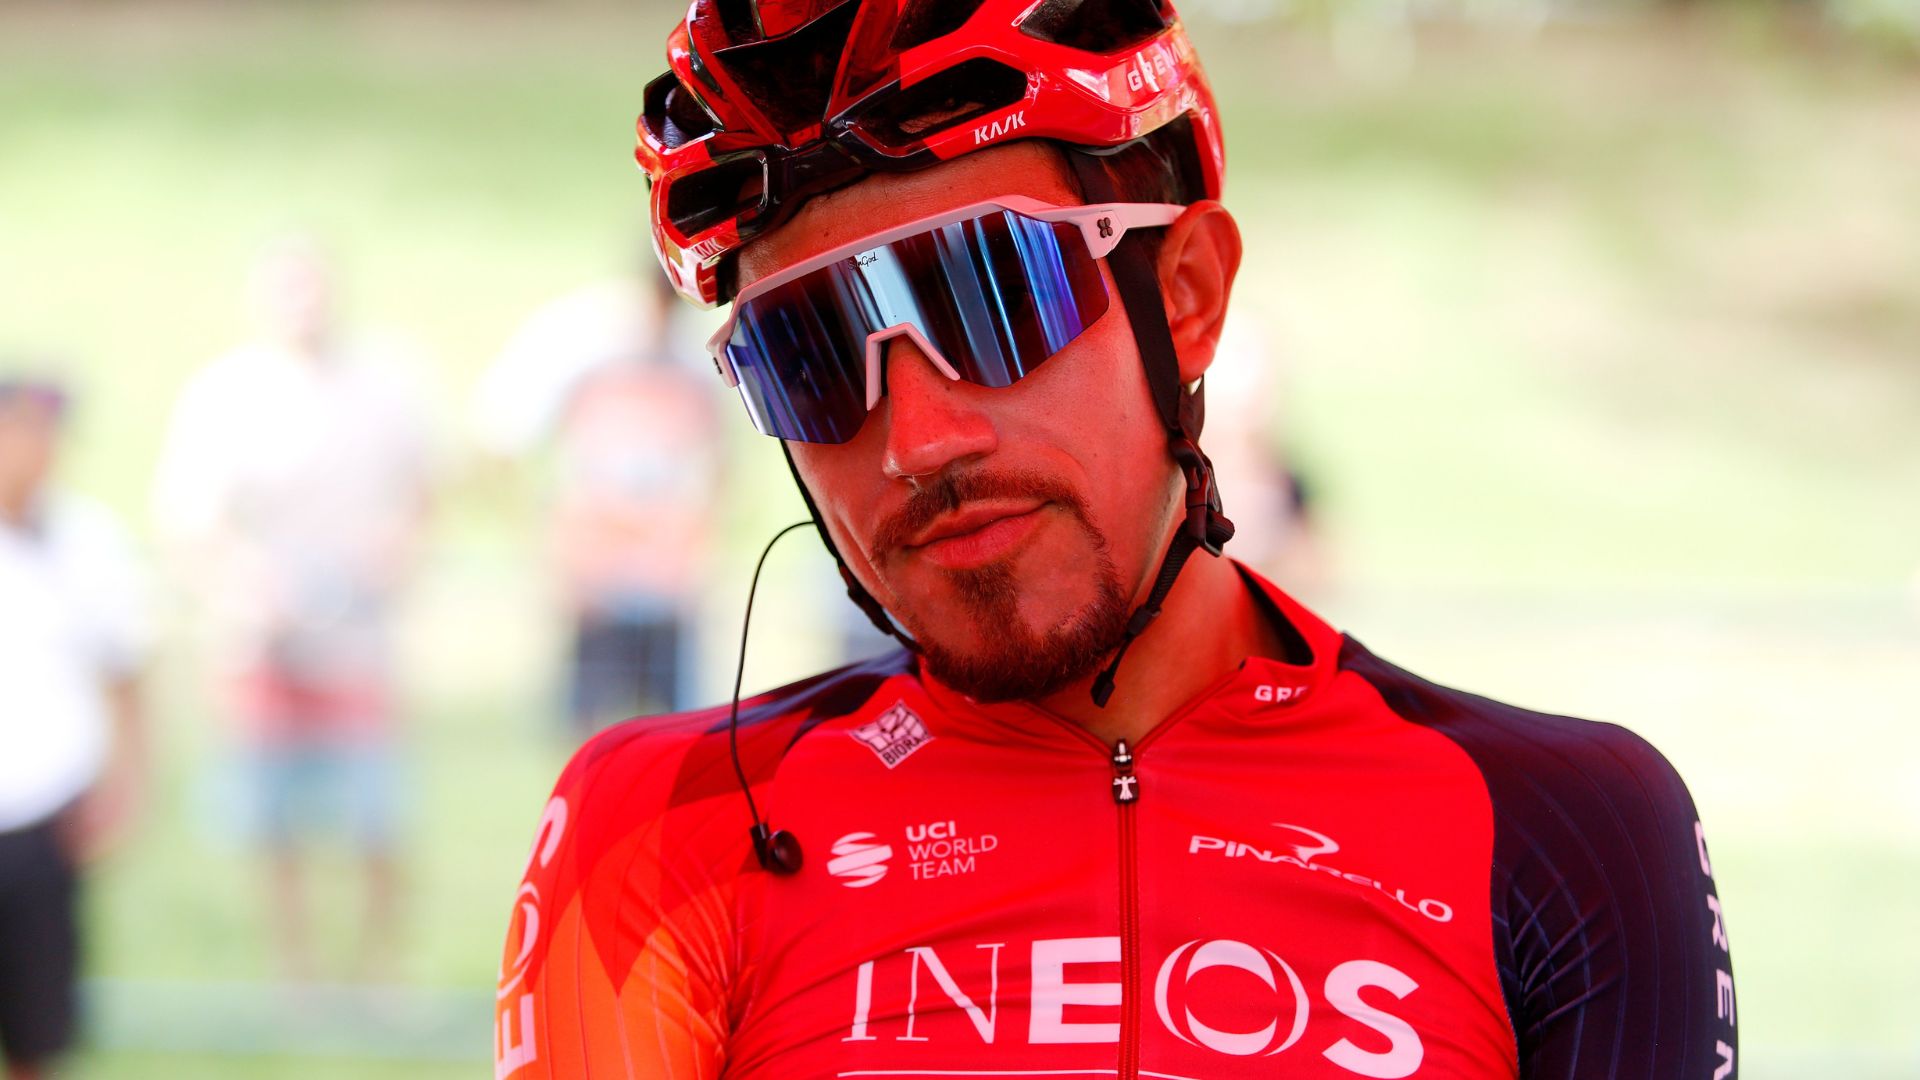 El pedalista colombiano ya tiene en mente el calendario de cara al Tour de Francia. @INEOSGrenadiers - Twitter